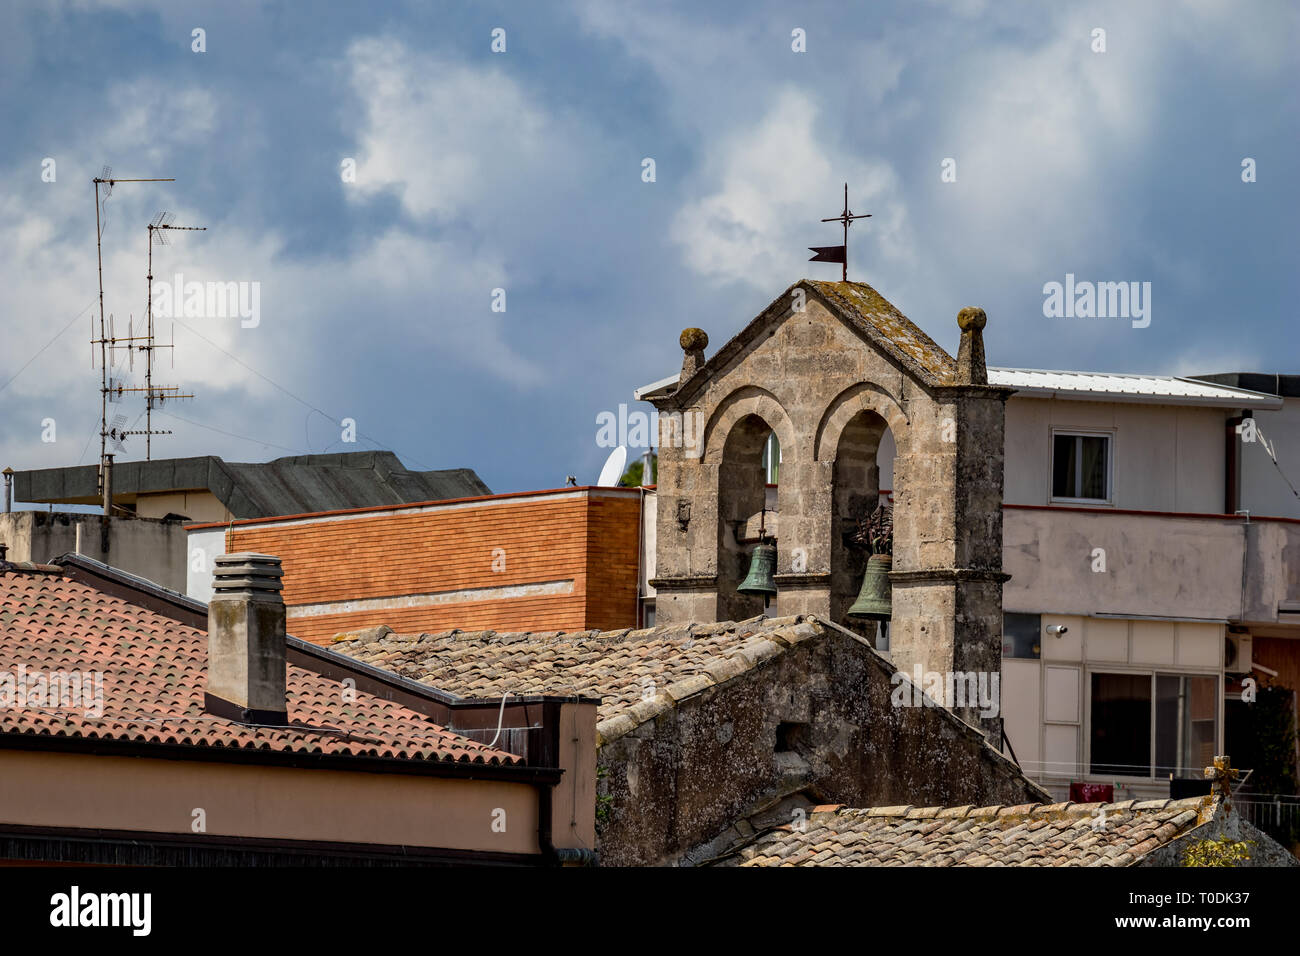 La torre de la iglesia con dos campanas de bronce y el techo, con vista de la calle Cruz, religiosas de la antigua ciudad de Matera, Basilicata, en el sur de Italia, nublado verano cálido Foto de stock